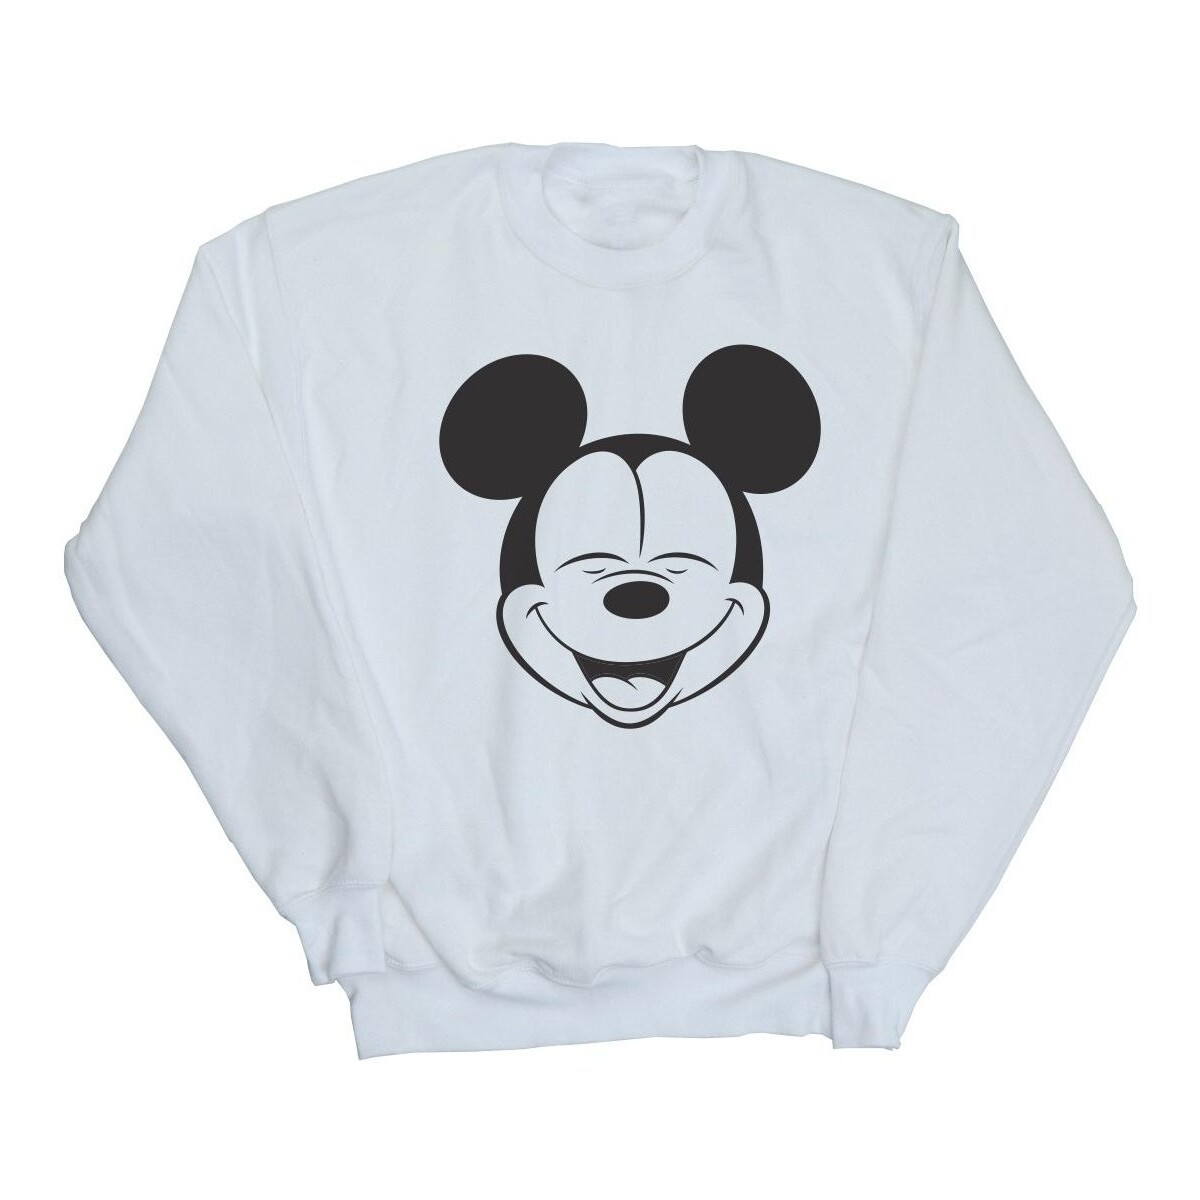 Vêtements Garçon Sweats Disney Mickey Mouse Closed Eyes Blanc